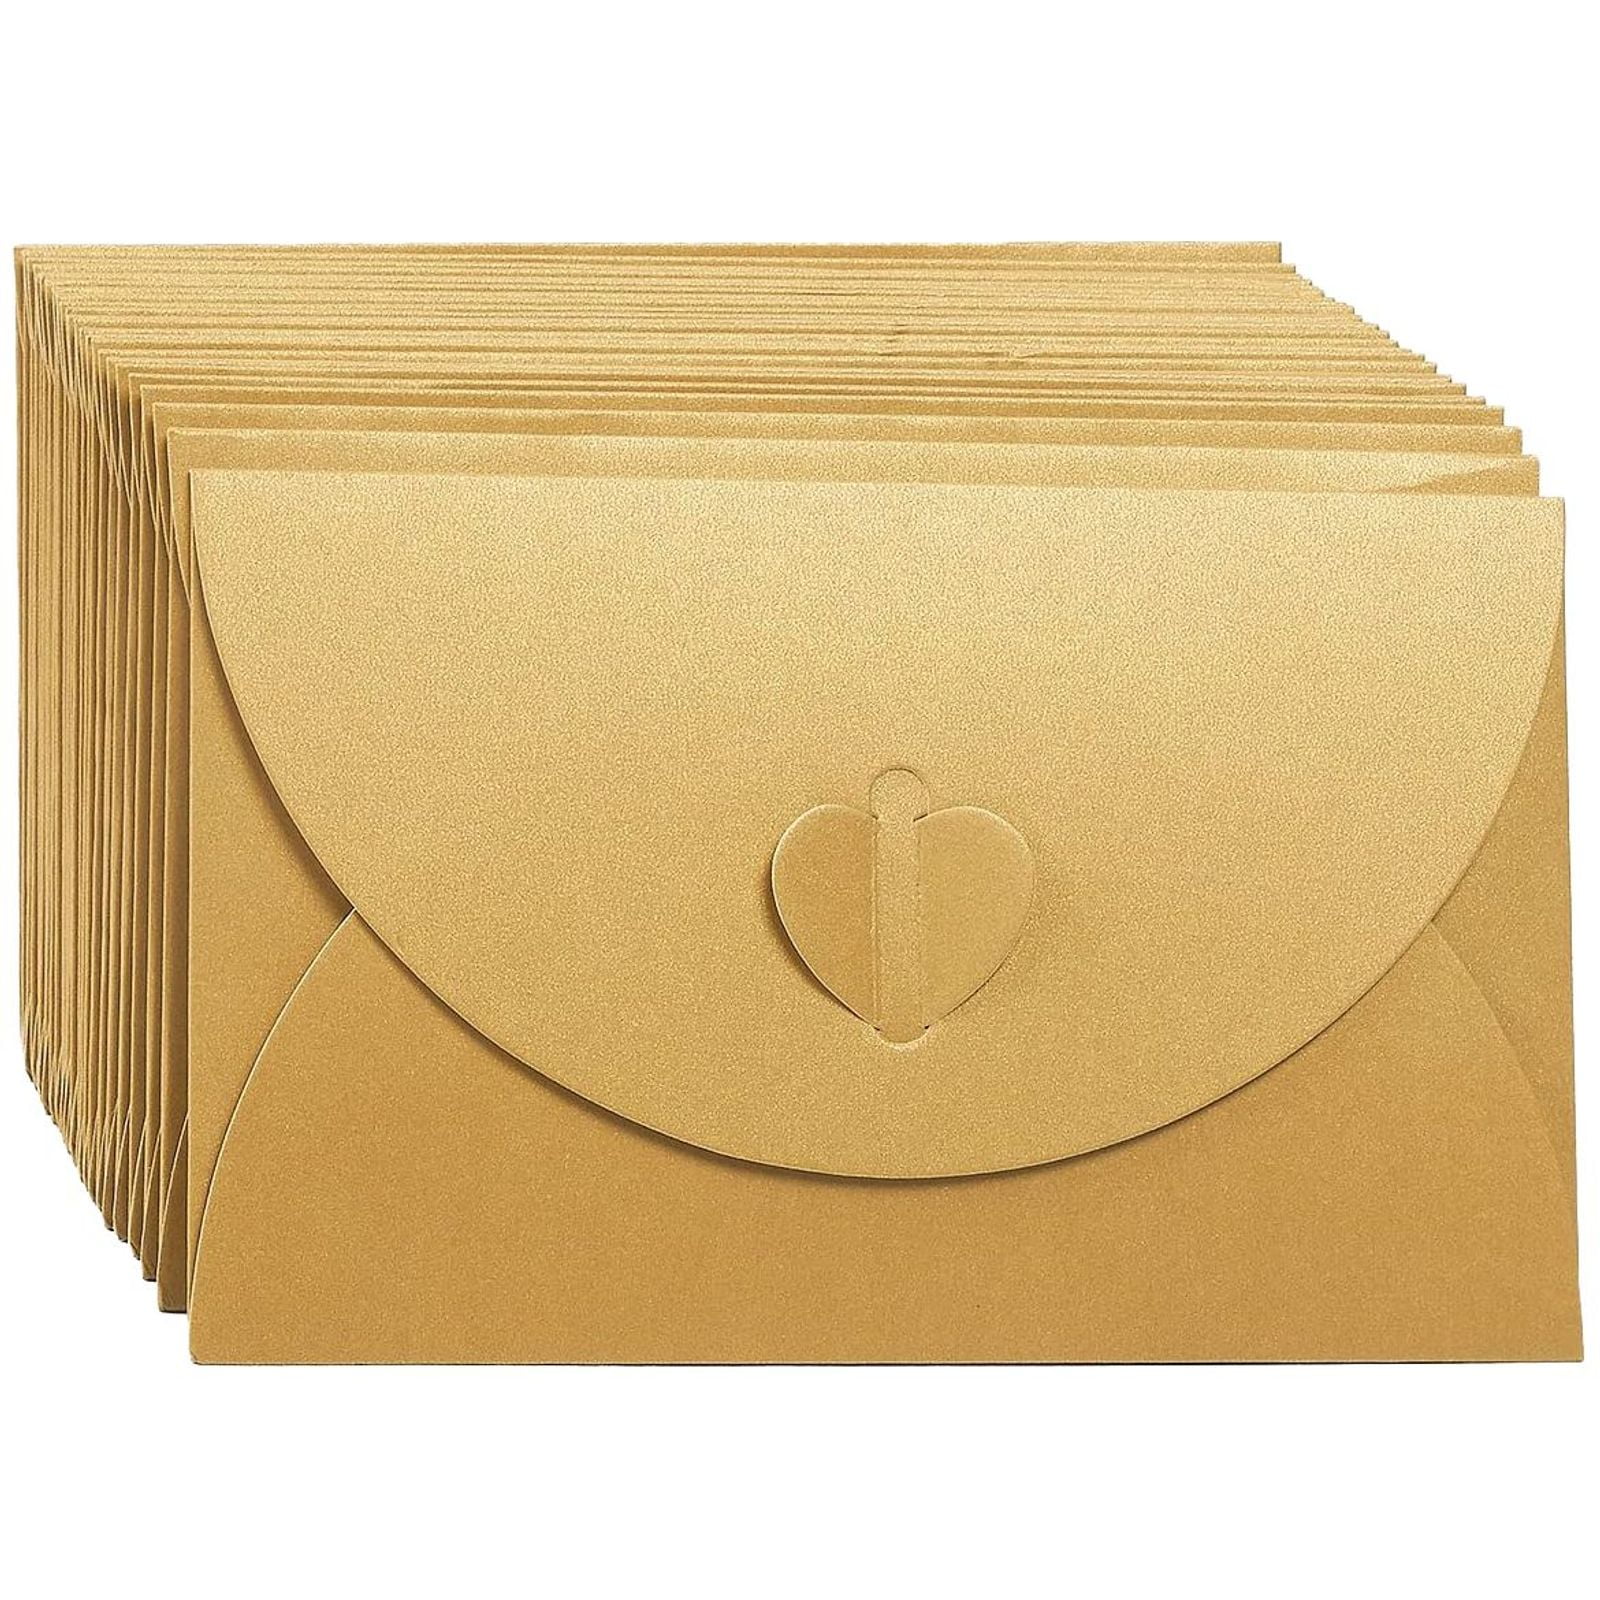 39  Branded Shipping Supplies STARTER KIT Box Envelopes Tape Tissue Postcard 